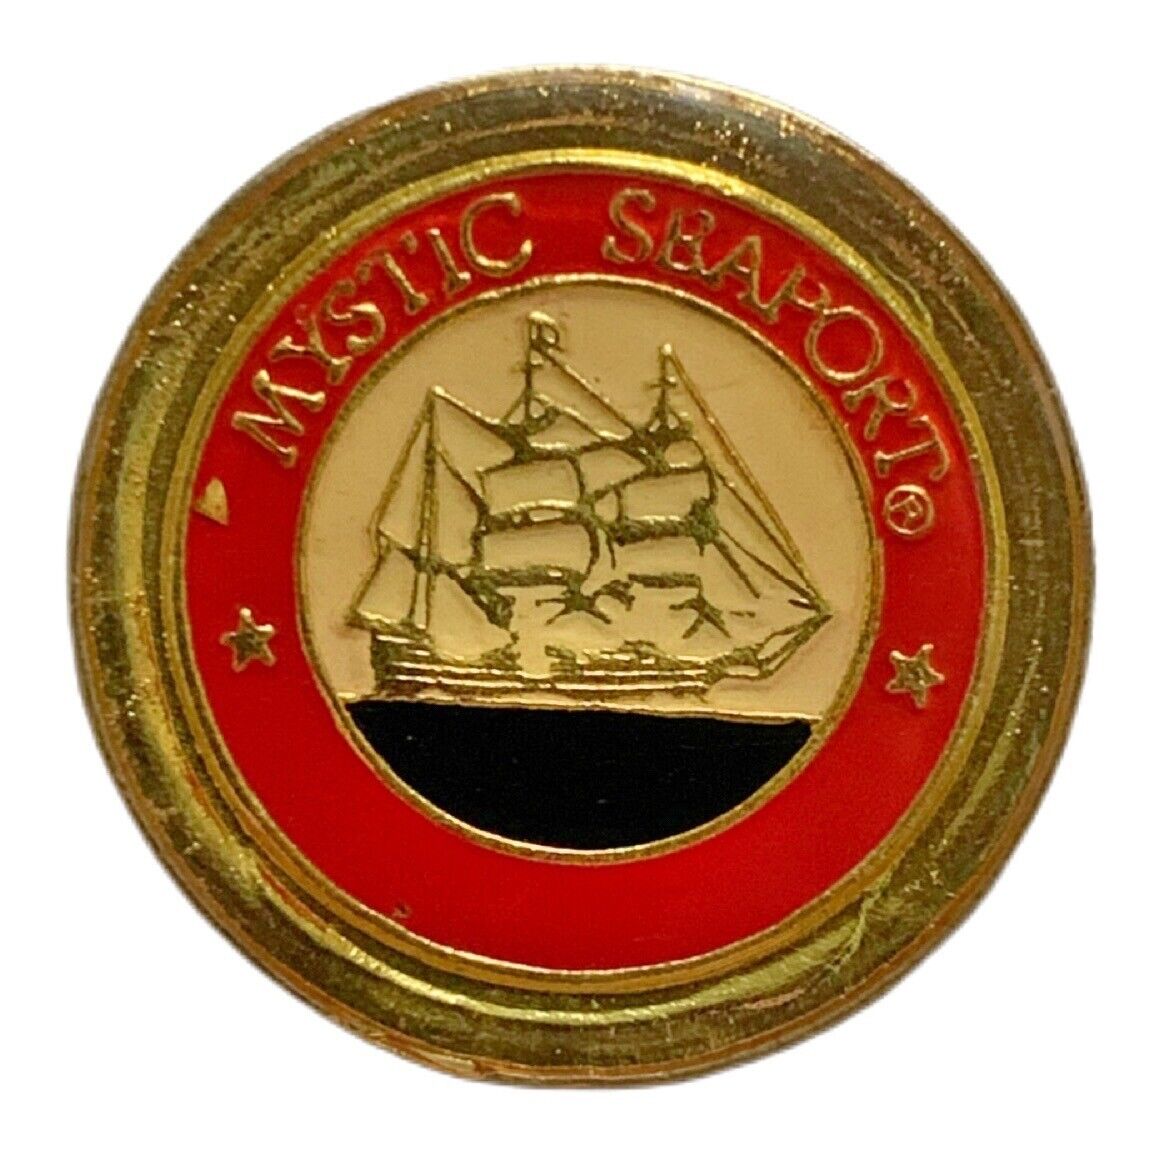 Vintage Mystic Seaport Connecticut Ship Travel Souvenir Pin